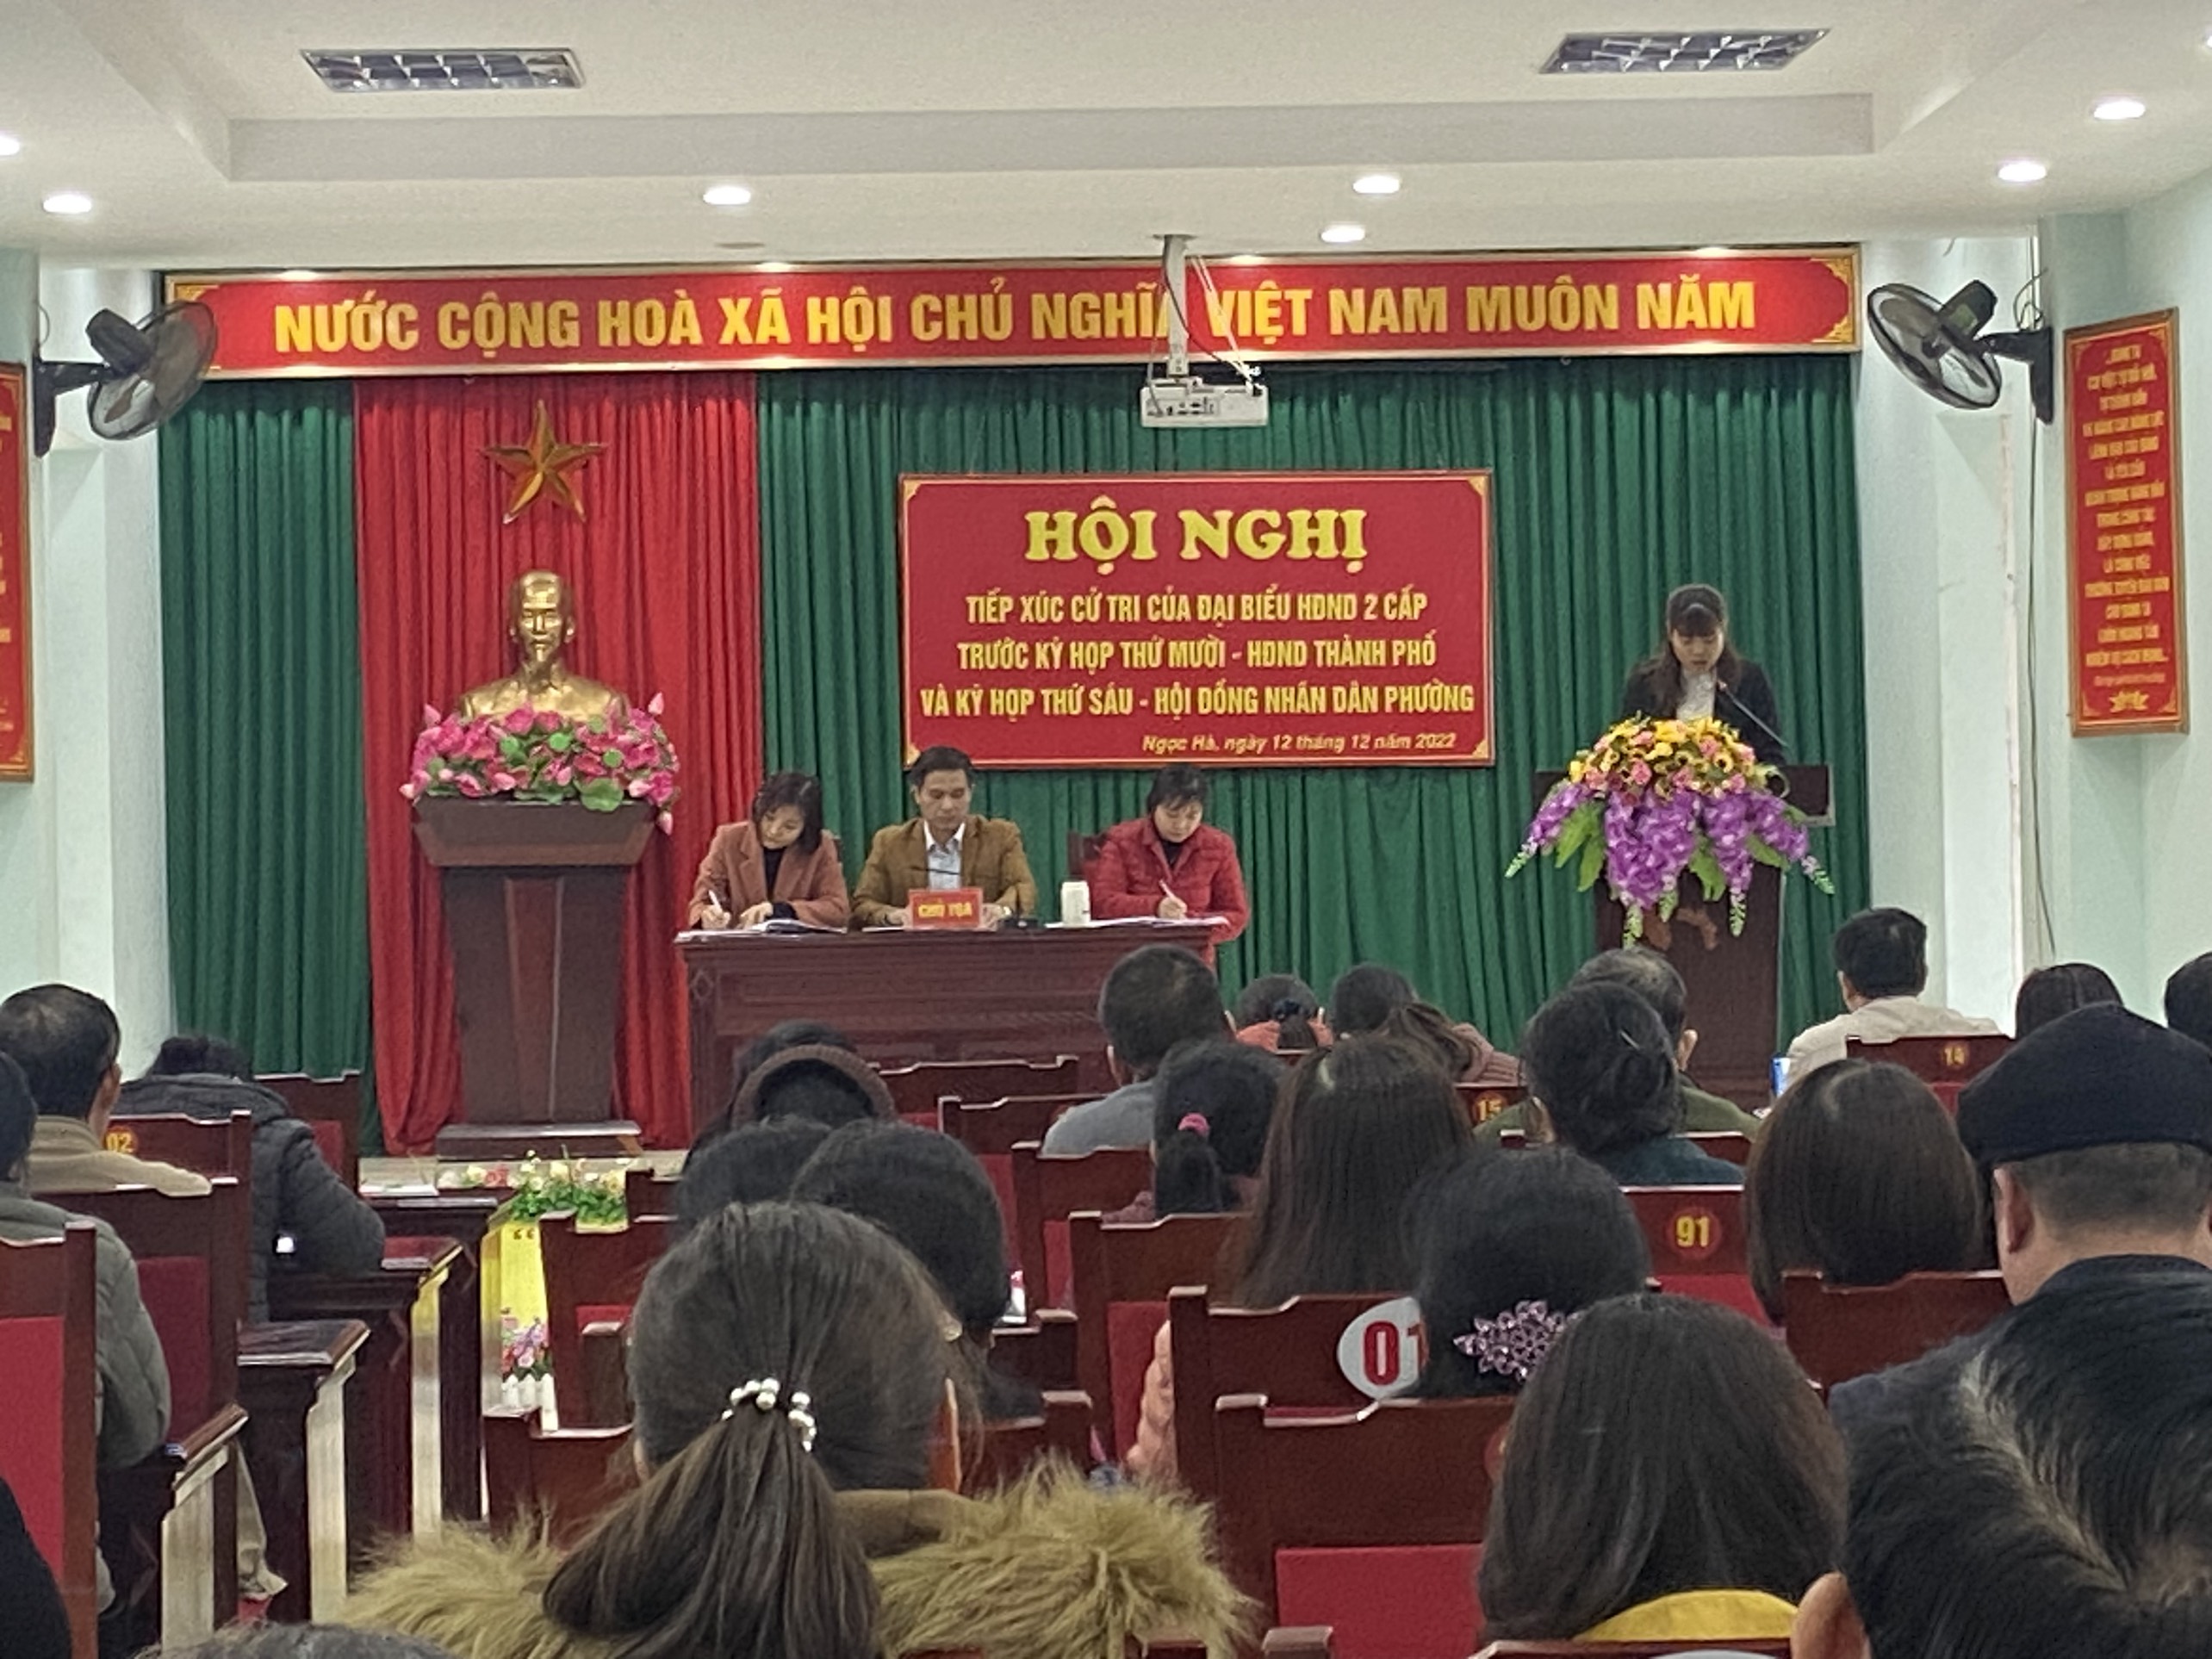 Hội nghị tiếp xúc cử tri của Đại biểu HĐND 2 cấp tại phường Ngọc Hà